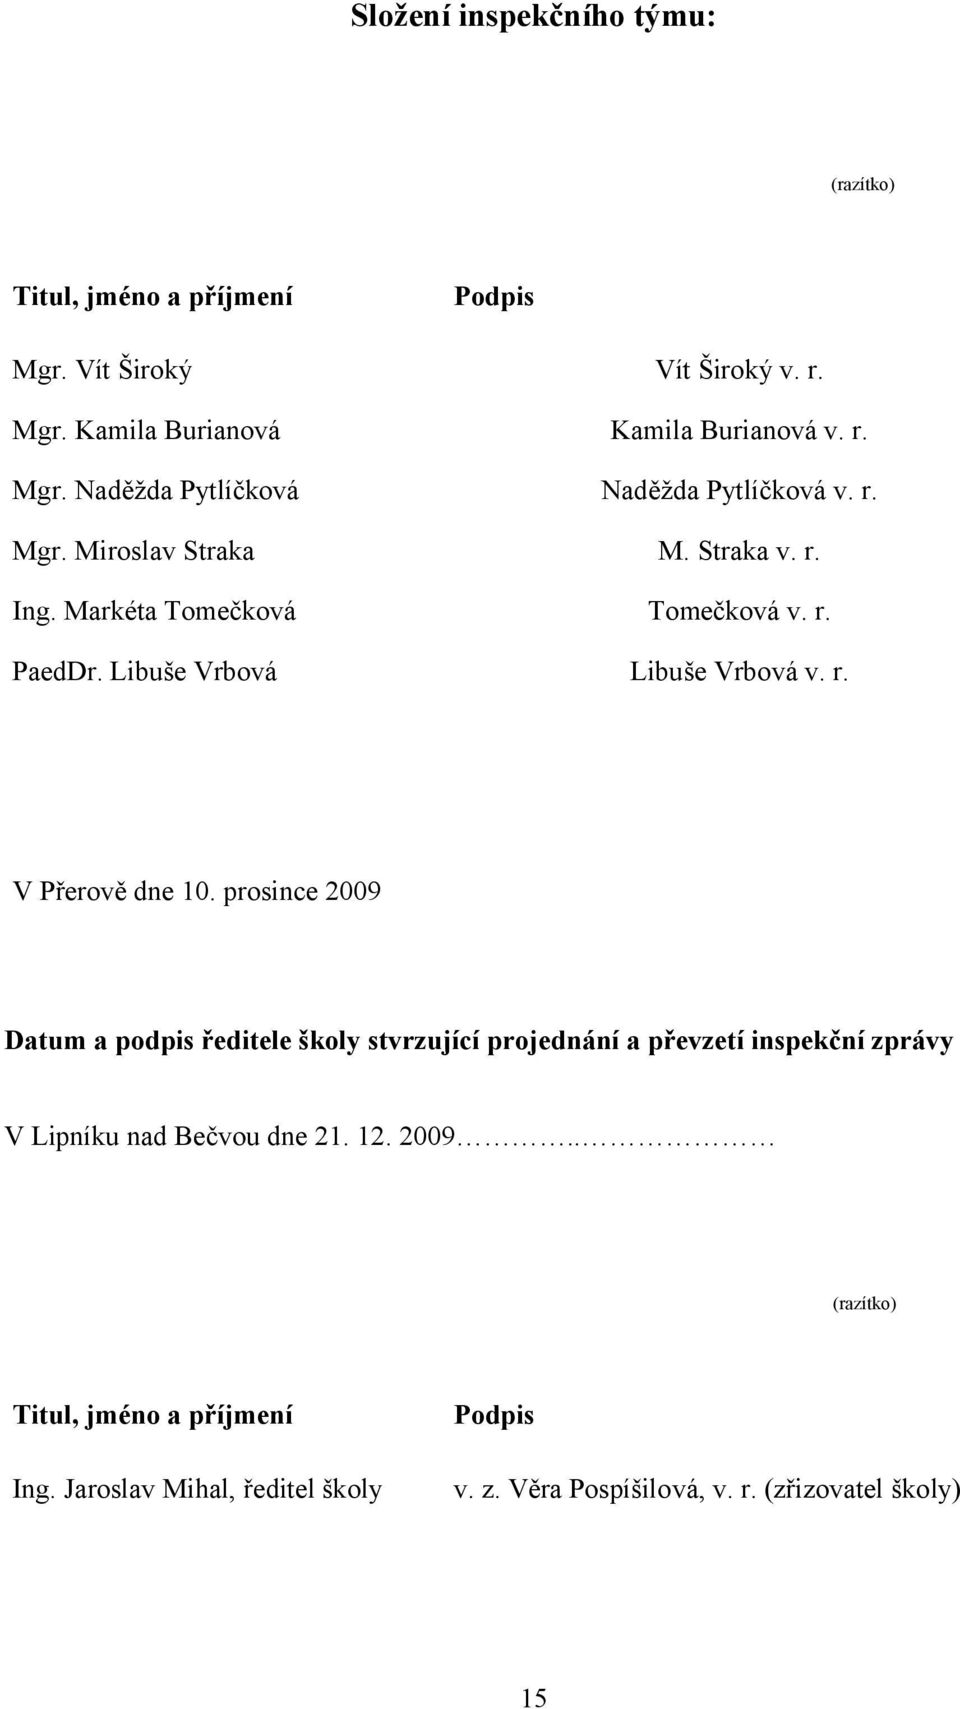 prosince 2009 Datum a podpis ředitele školy stvrzující projednání a převzetí inspekční zprávy V Lipníku nad Bečvou dne 21. 12. 2009.. (razítko) Titul, jméno a příjmení Ing.